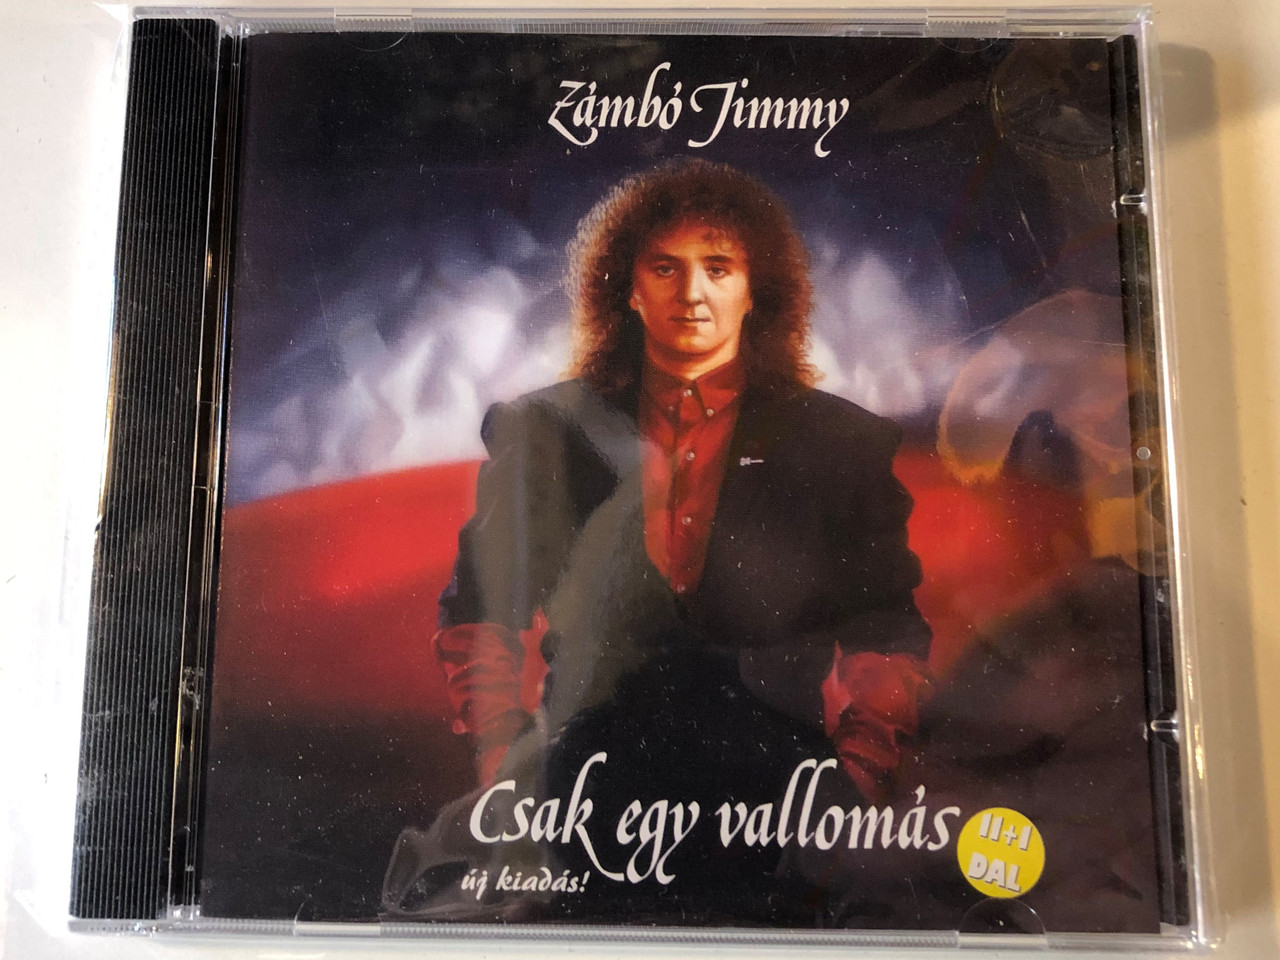 Zámbó Jimmy ‎– Csak Egy Vallomás, ug kiadas! / Magneoton Audio CD 1995 /  0630-11422-2 / Hungarian Pop - bibleinmylanguage